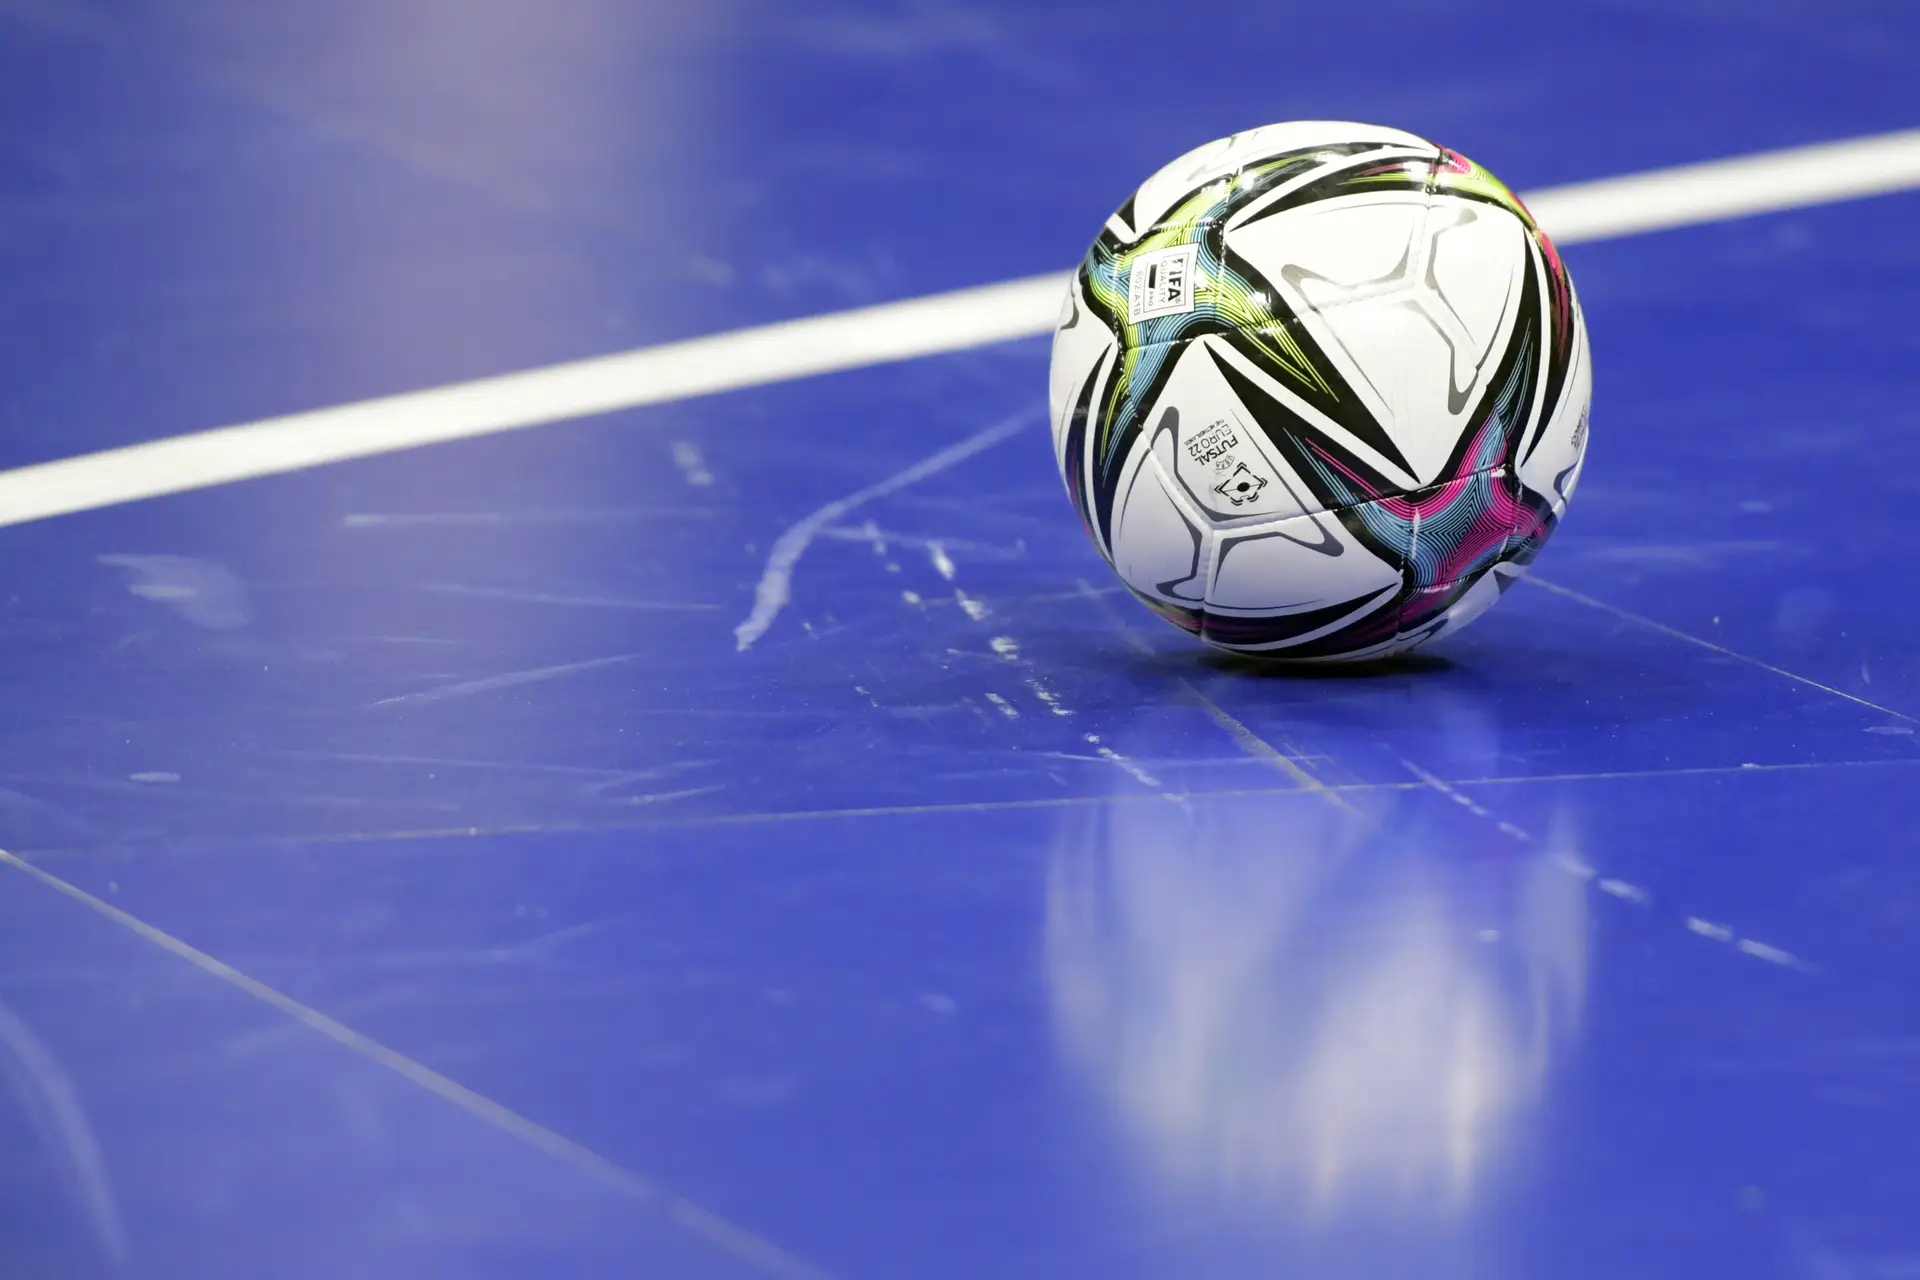 Futsal joga-se com a cabeça, não é com os pés”. Entrevista a João